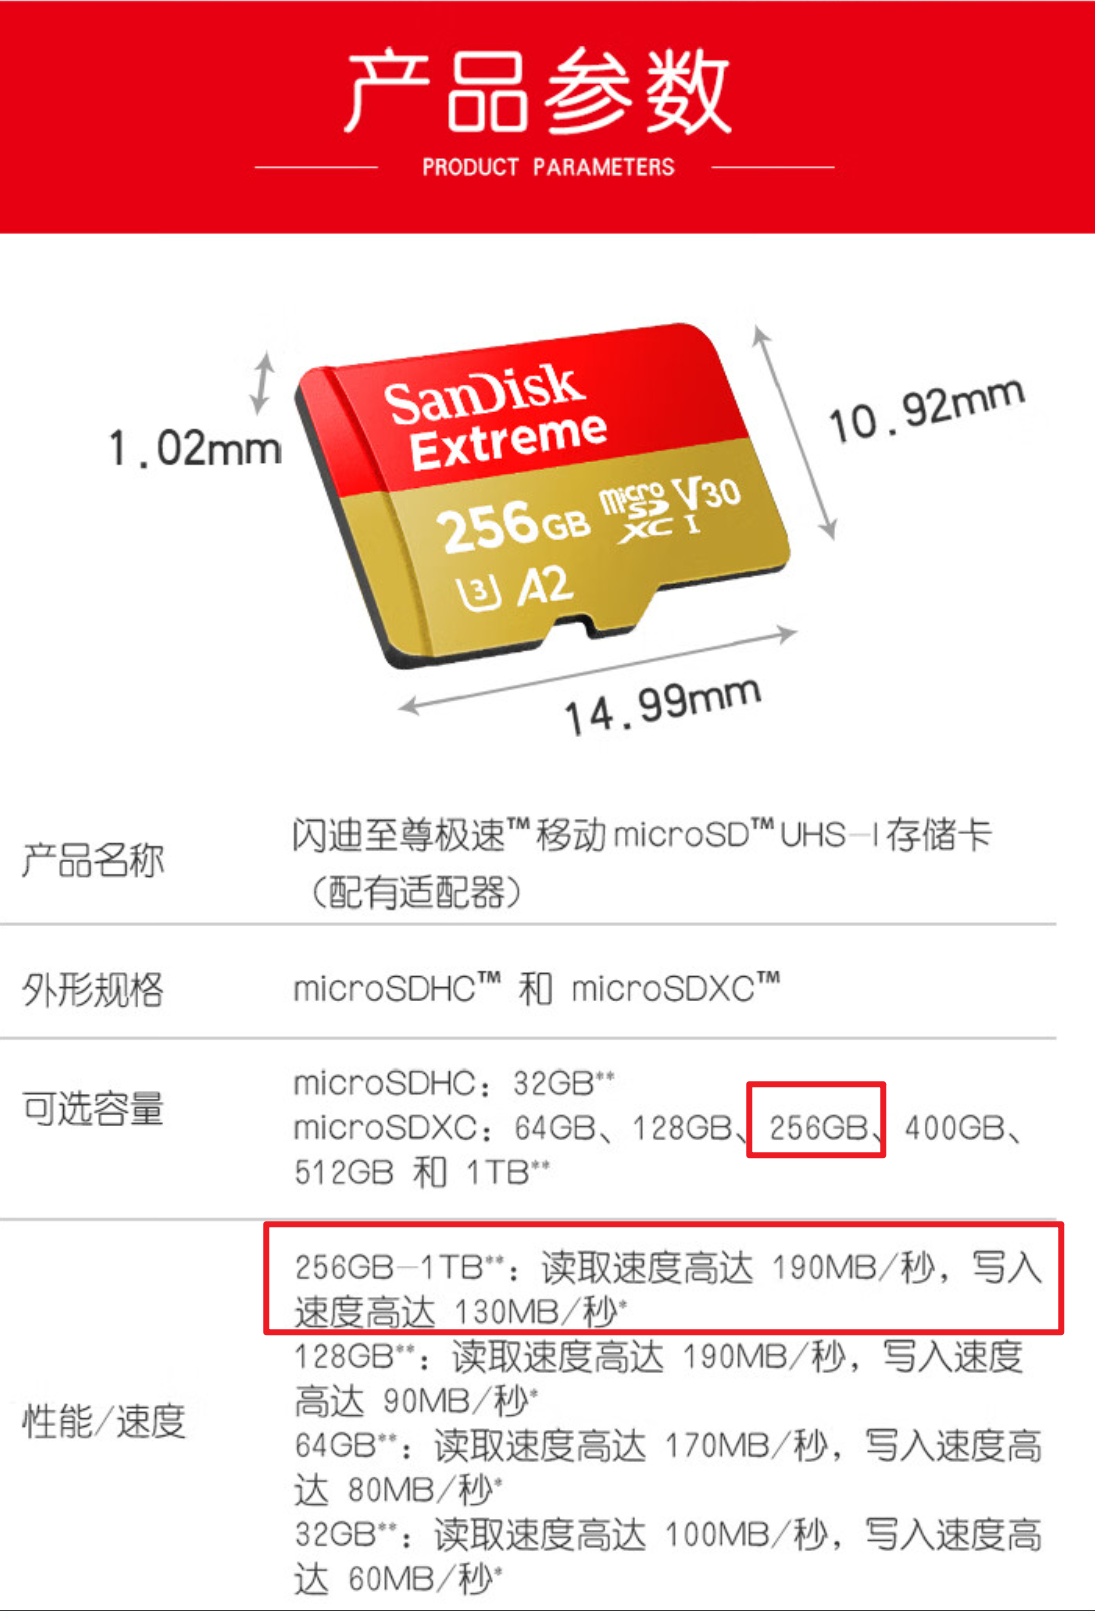 SanDisk TF 卡至尊极速 256GB